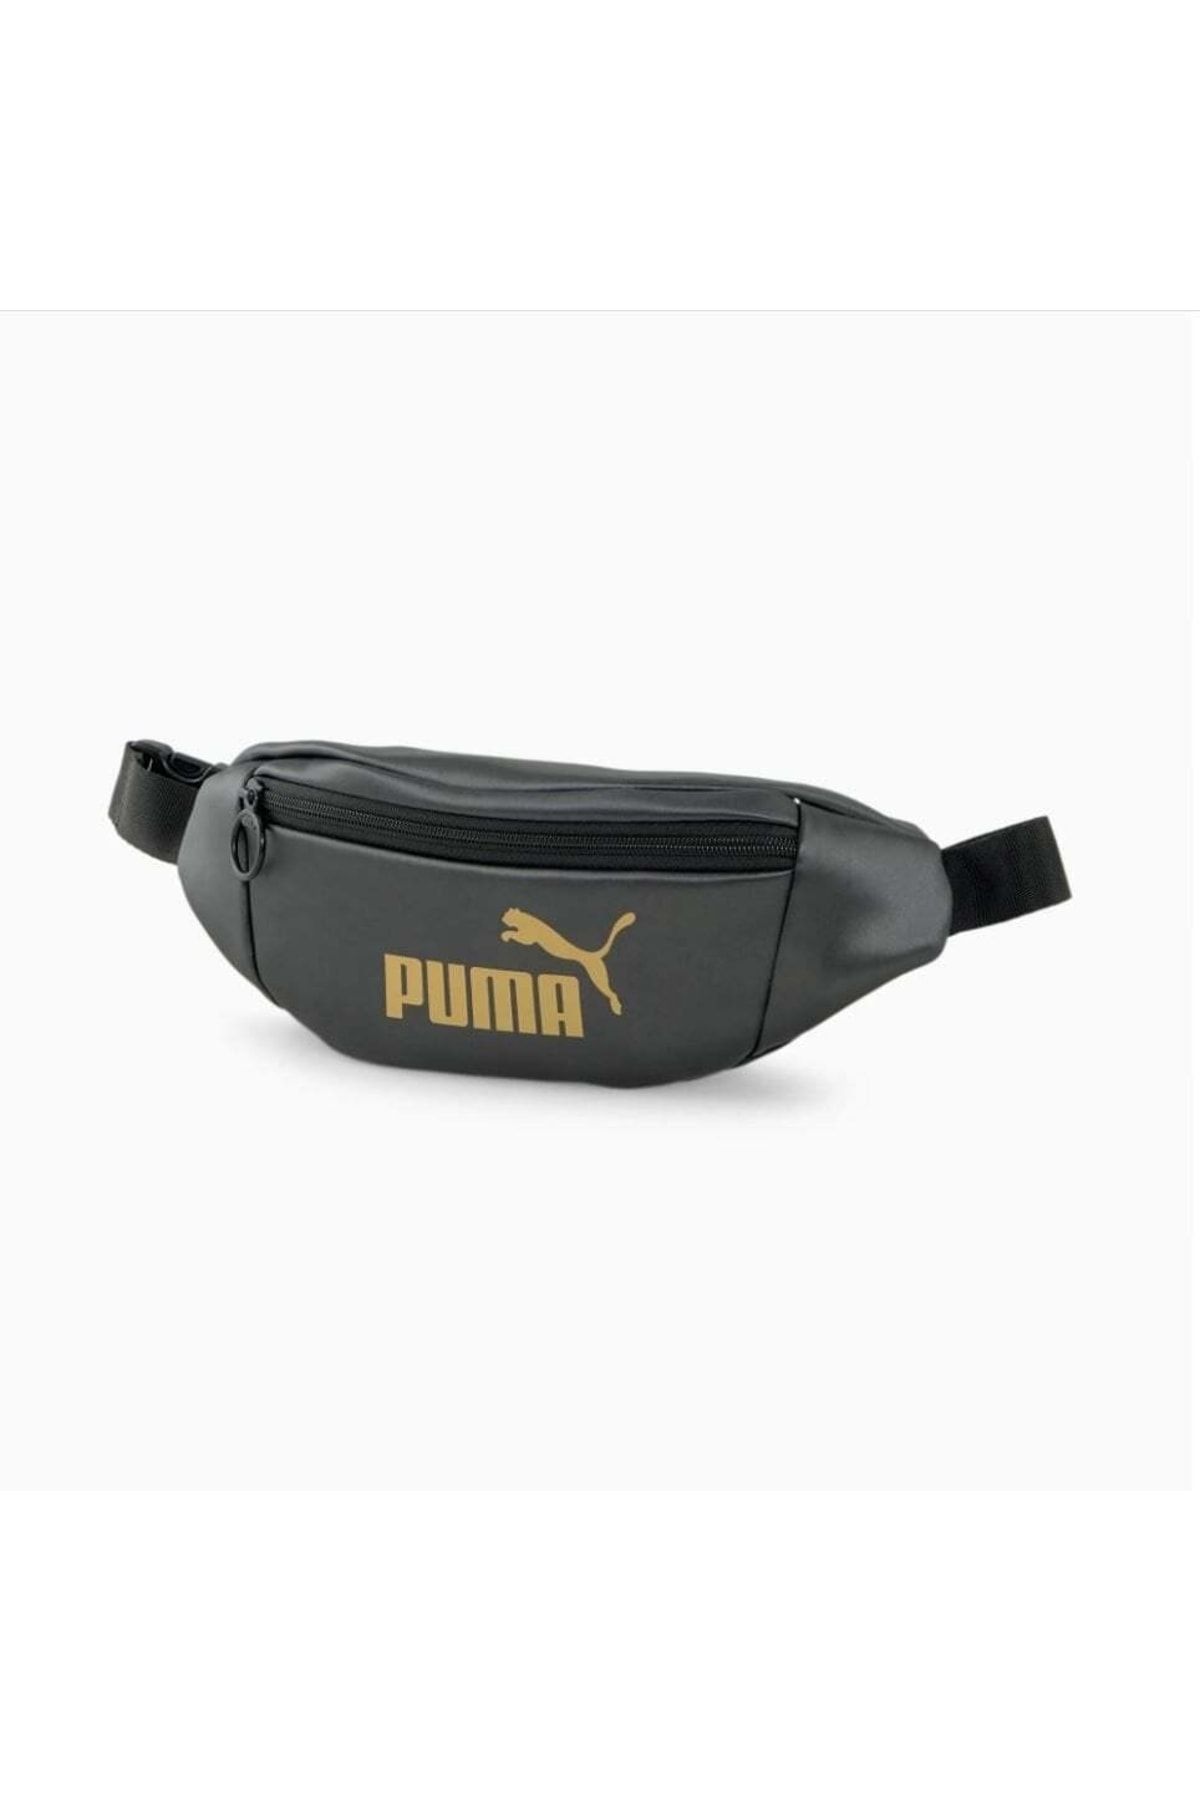 Puma Core Up Waist Bag Kadın Bel Çantası-siyah 07947801